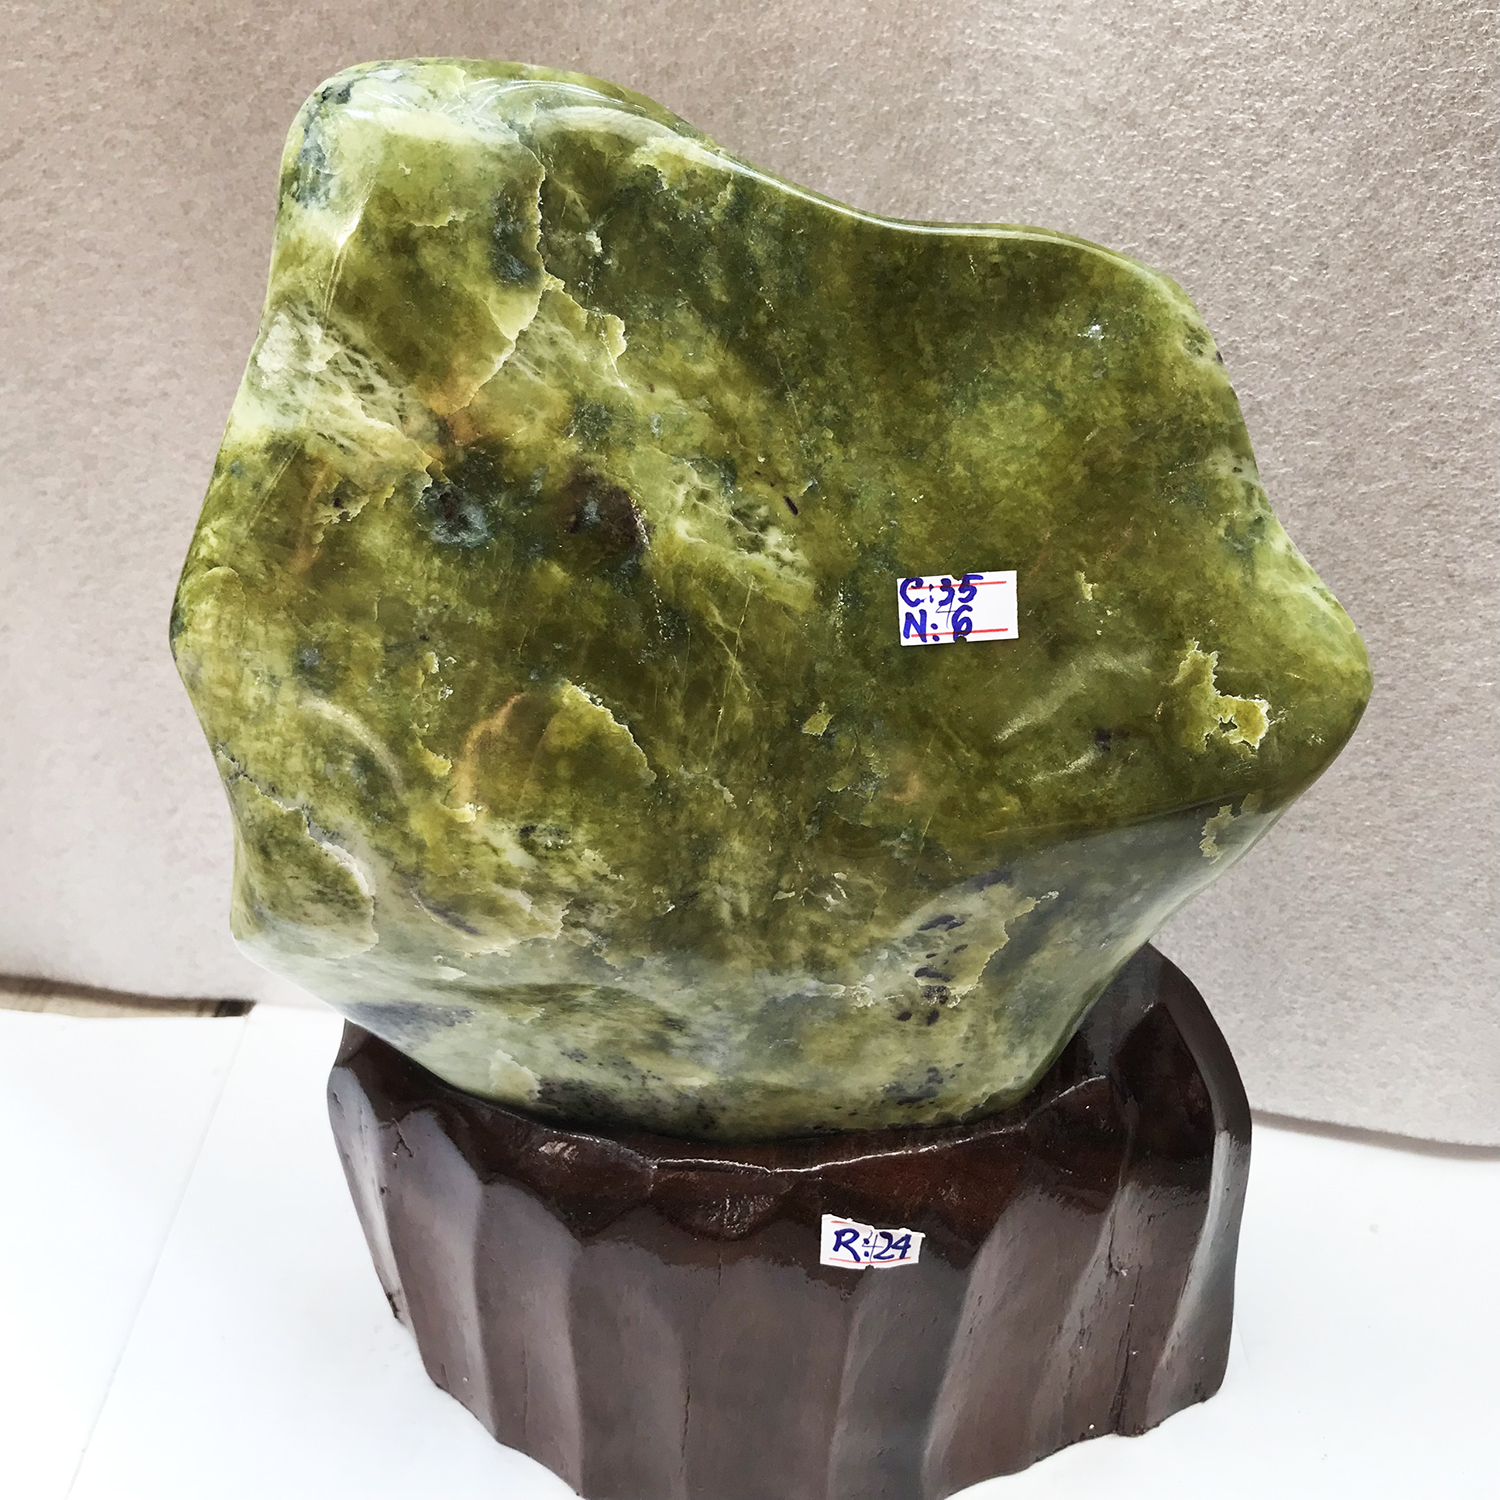 Cây đá phong thủy cao 47cm, nặng 13 kg cho người mệnh Mộc và Hỏa tự nhiên chất ngọc serpentine màu xanh đậm và bóng